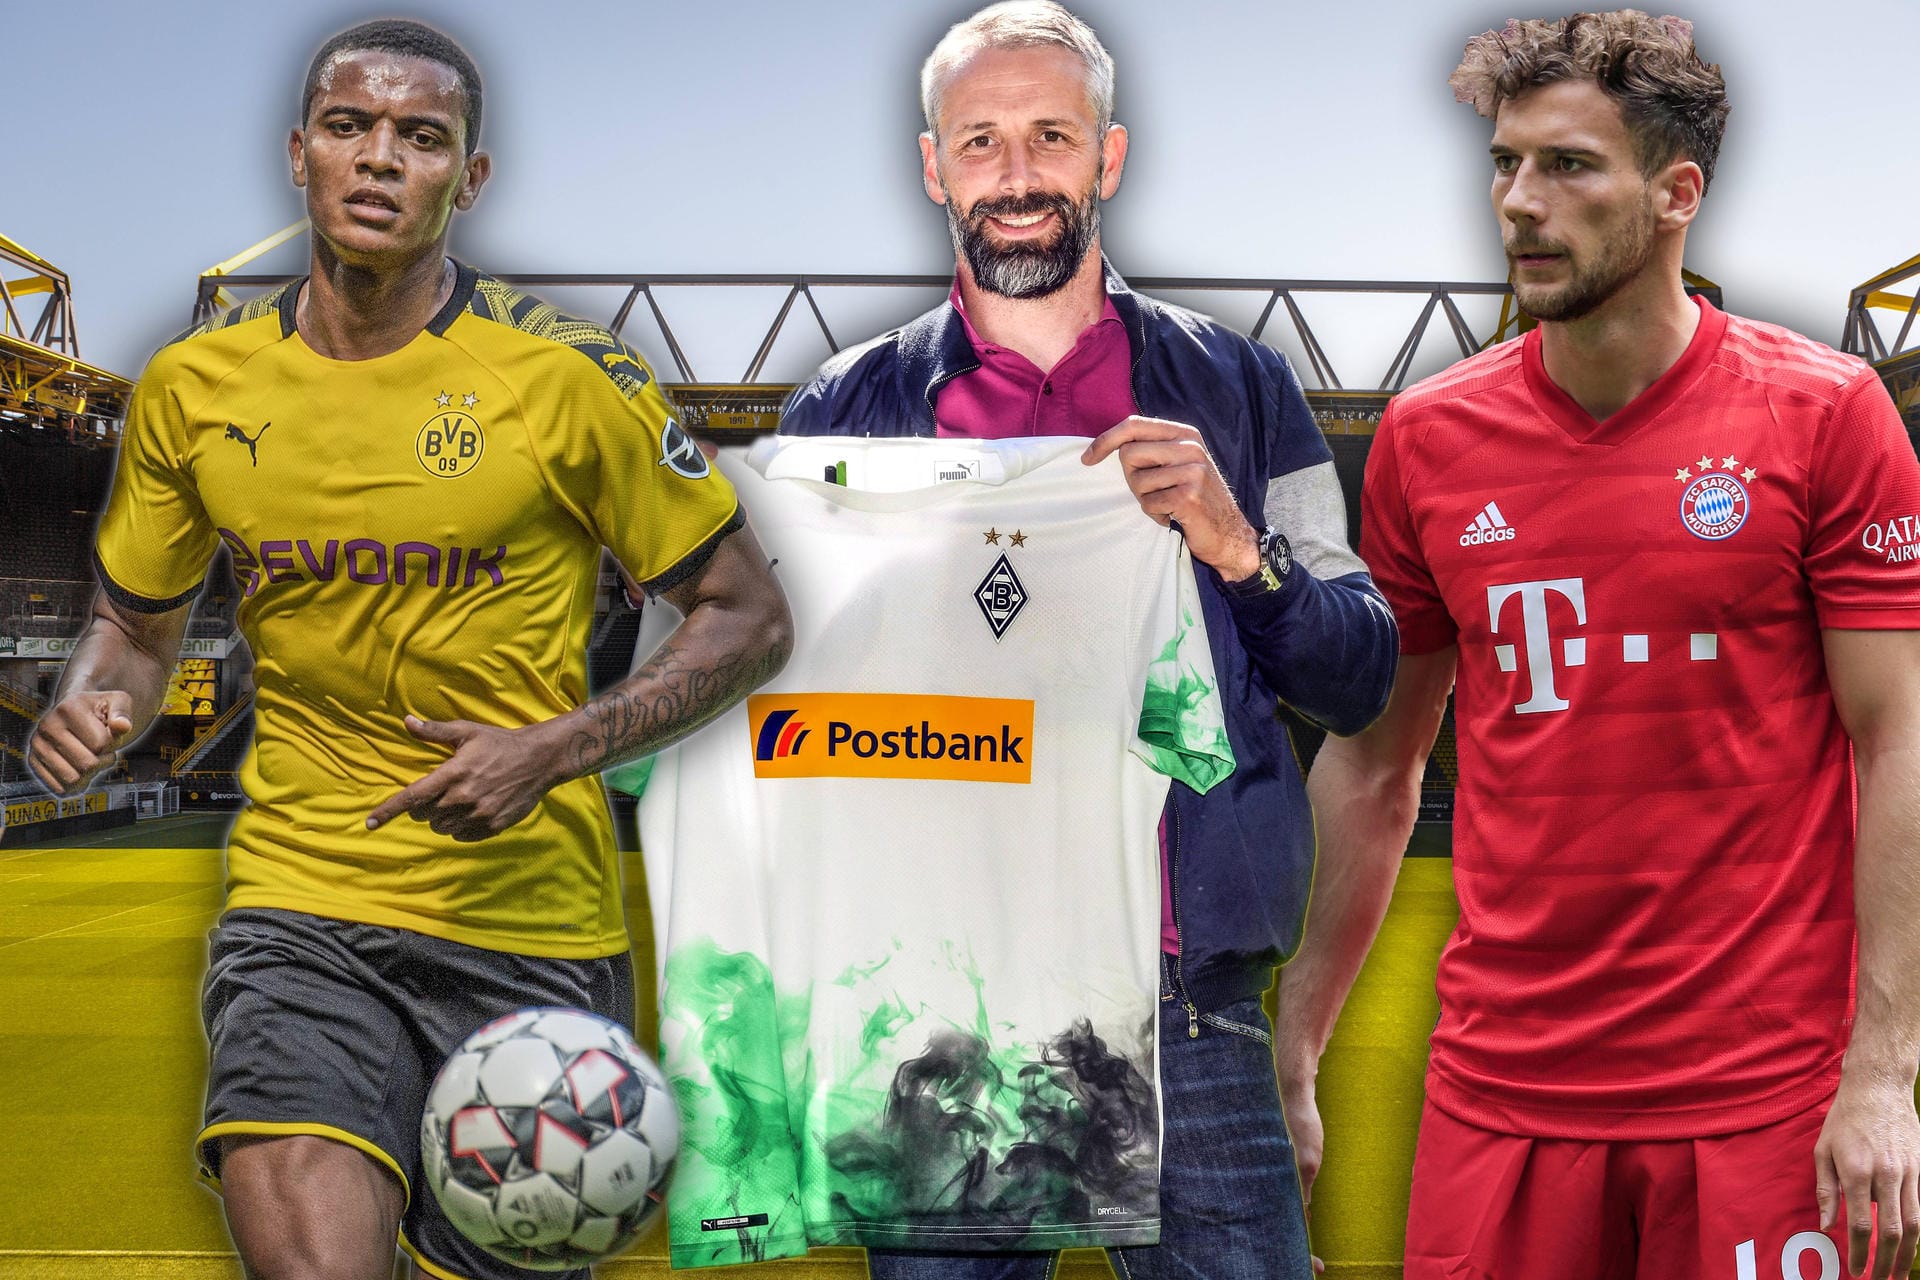 Fast alle Vereine haben ihr Dress für die im August beginnende Spielzeit schon präsentiert. Während einige wie der BVB oder der FC Bayern auf schlichte Tradition setzen, trauen sich Klubs wie Gladbach an ungewöhnliche Designs.